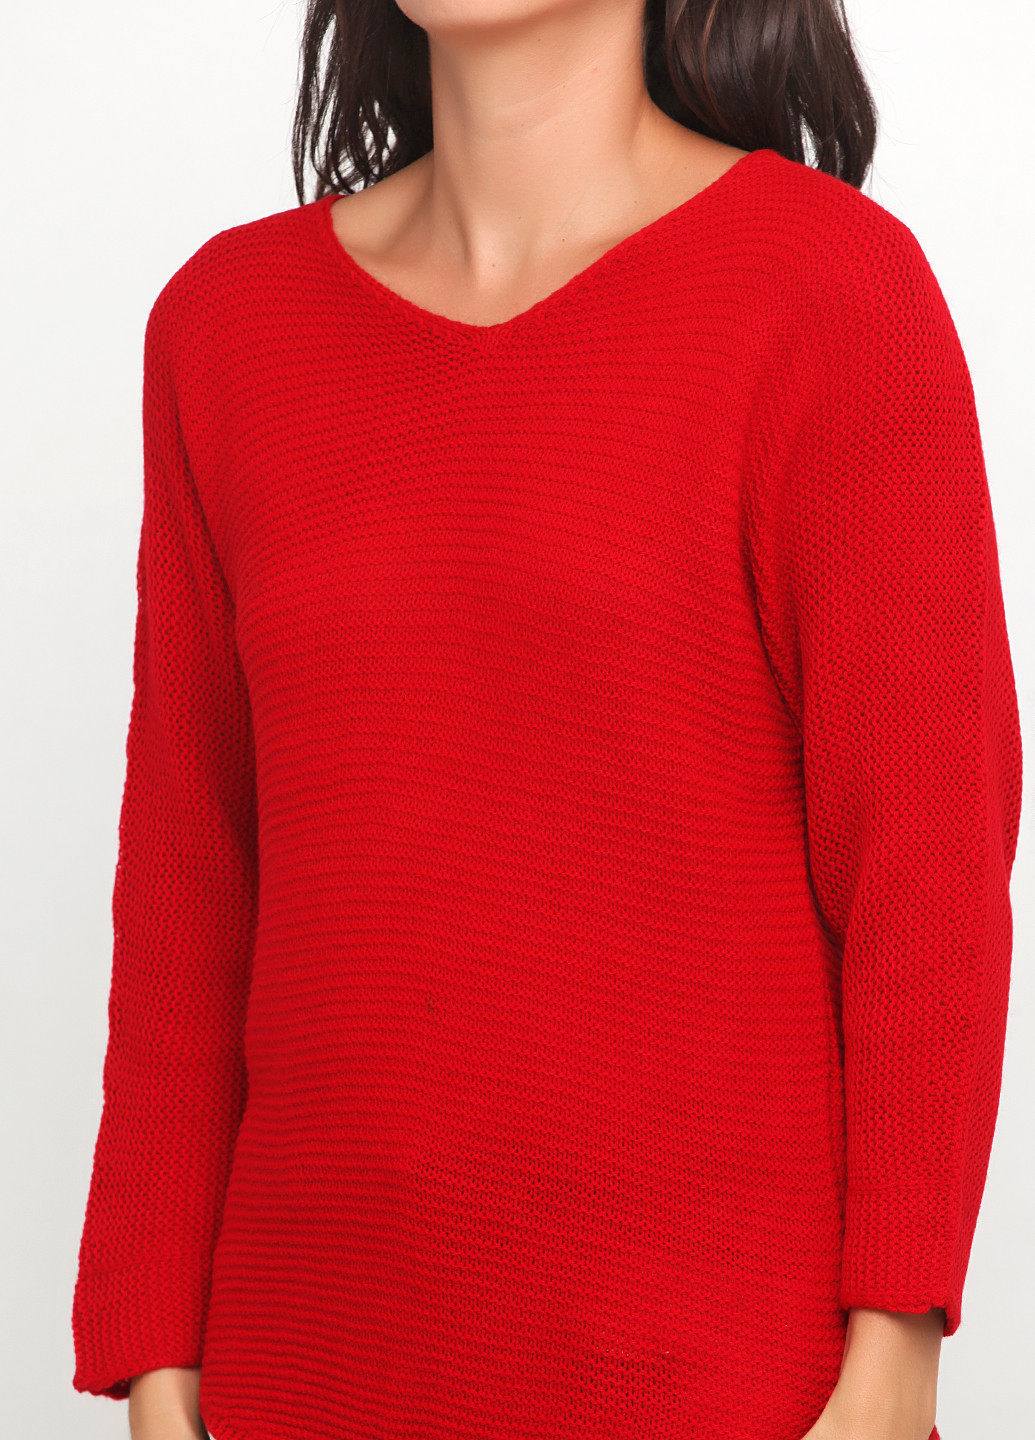 Вишневый демисезонный пуловер пуловер Metin Triko